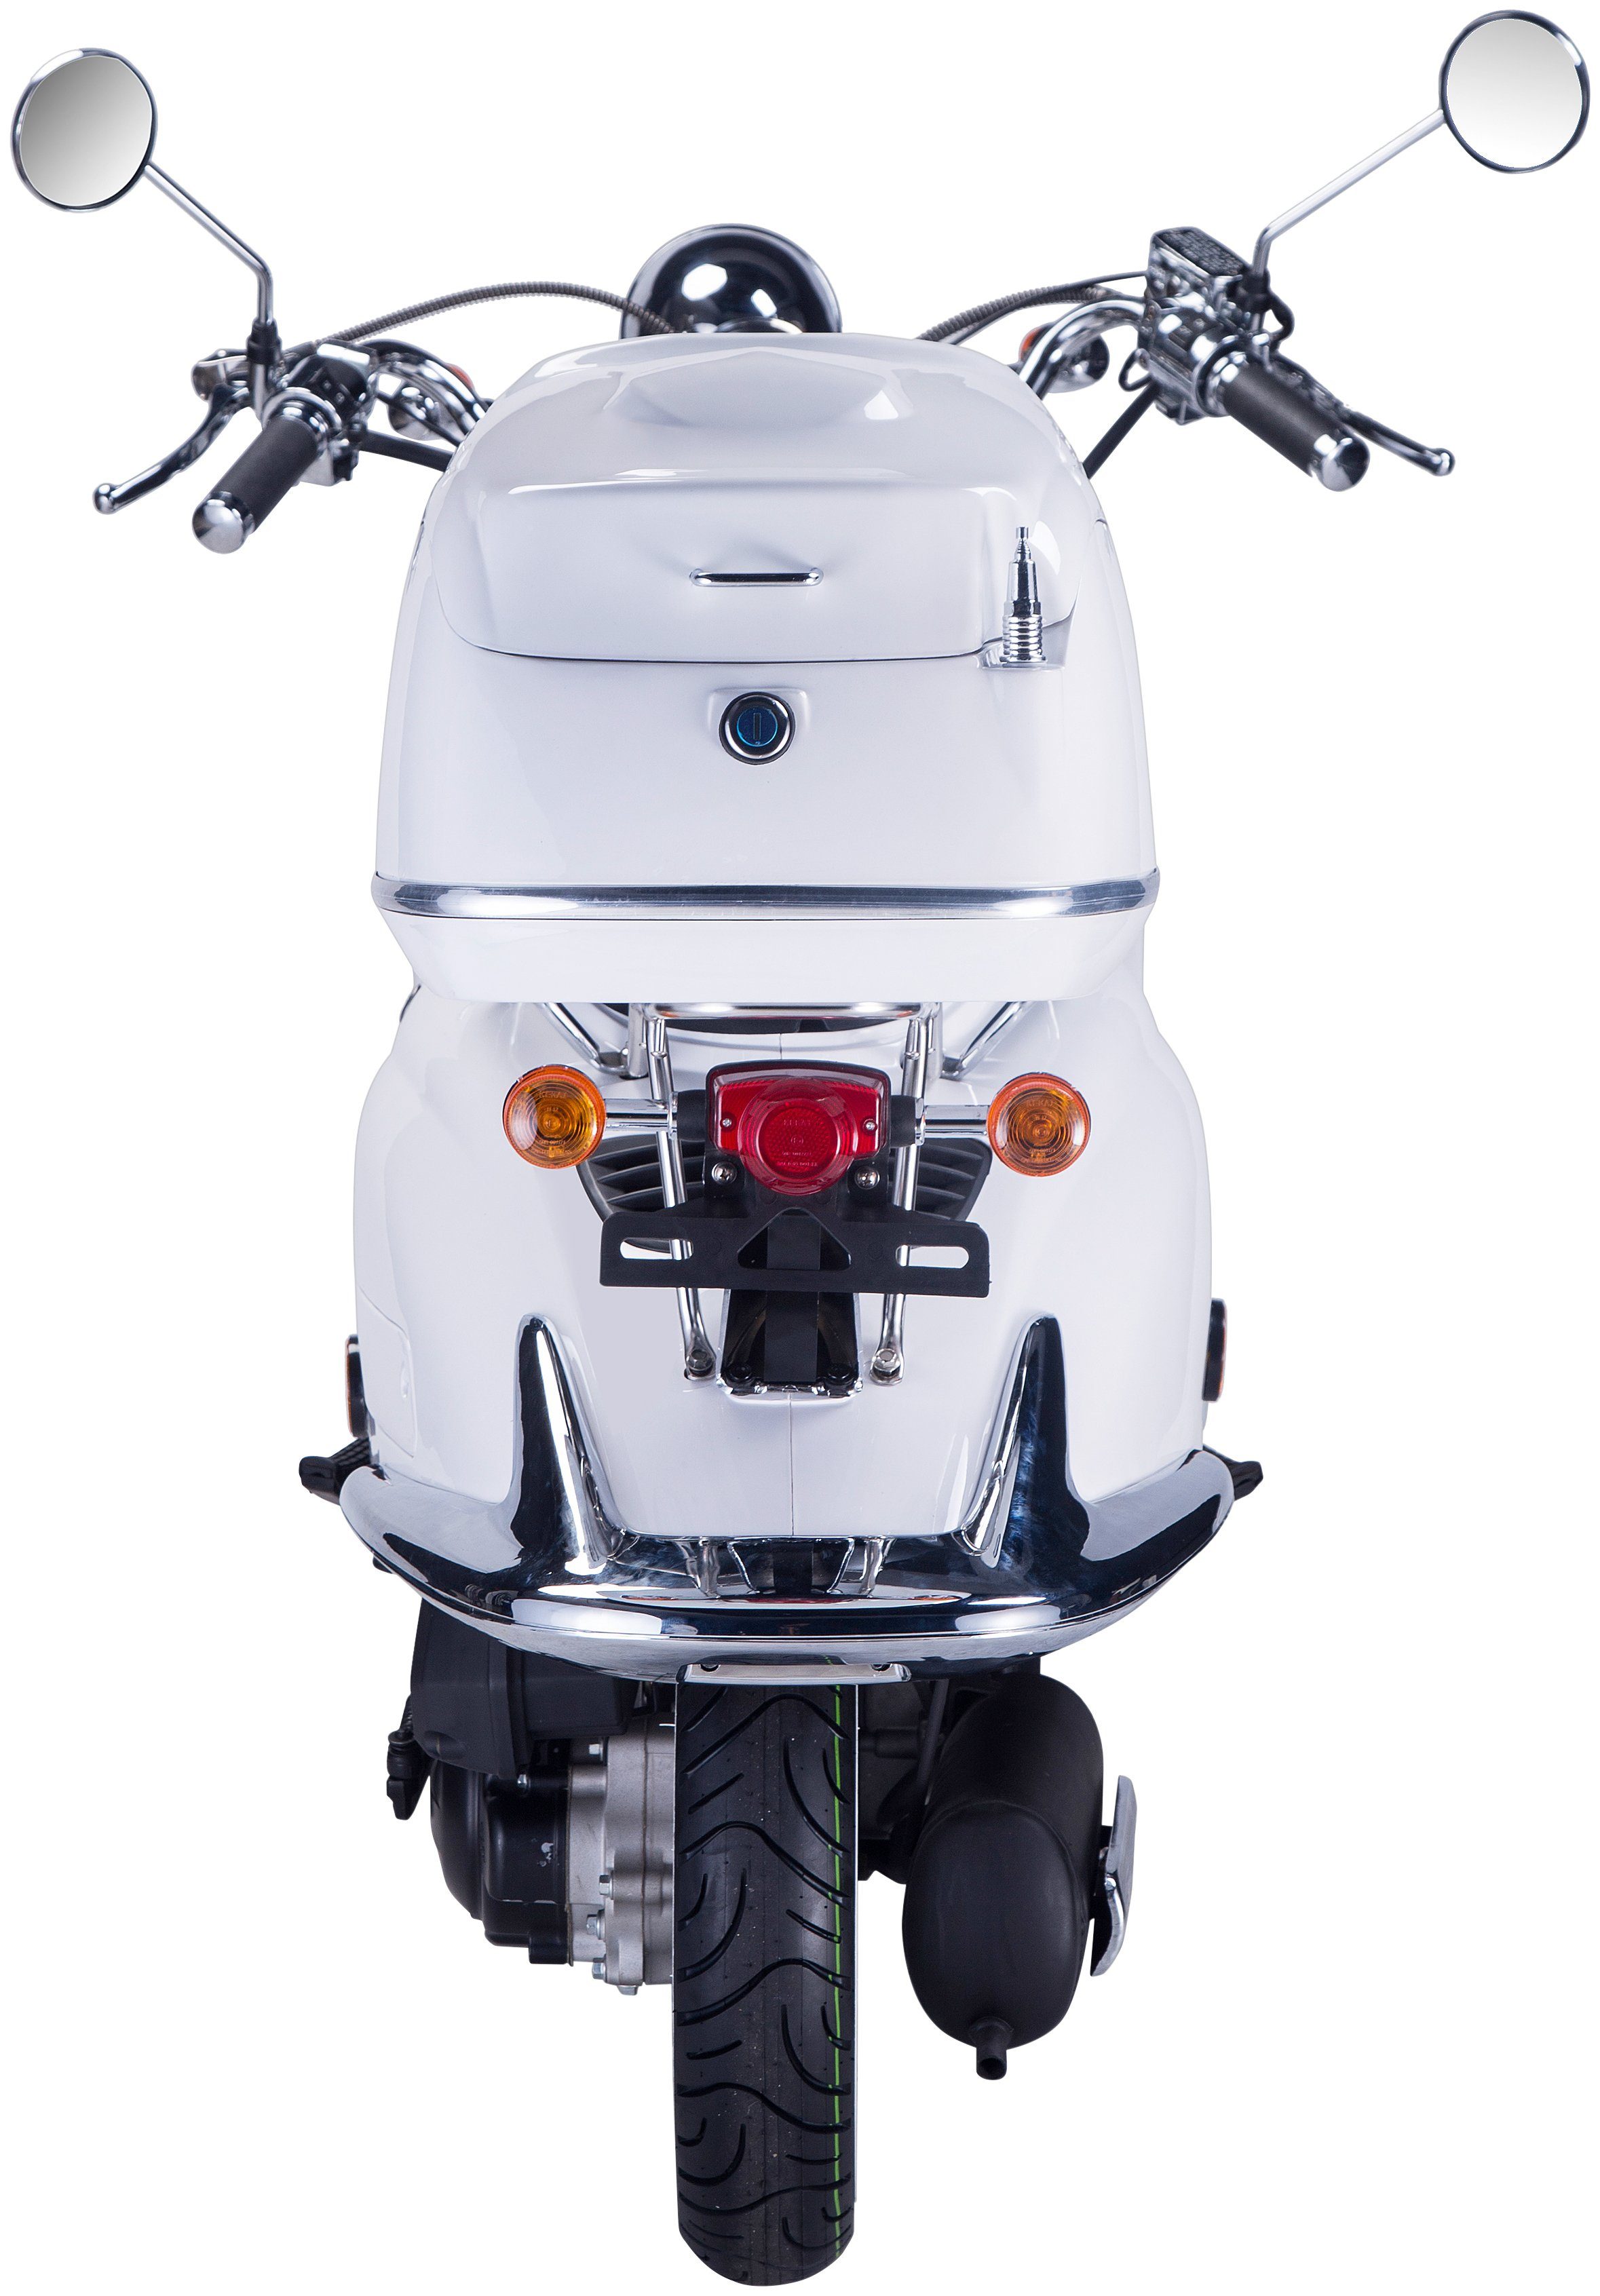 GT UNION Strada, weiß Topcase 5, Motorroller ccm, km/h, (Set), mit 85 125 Euro